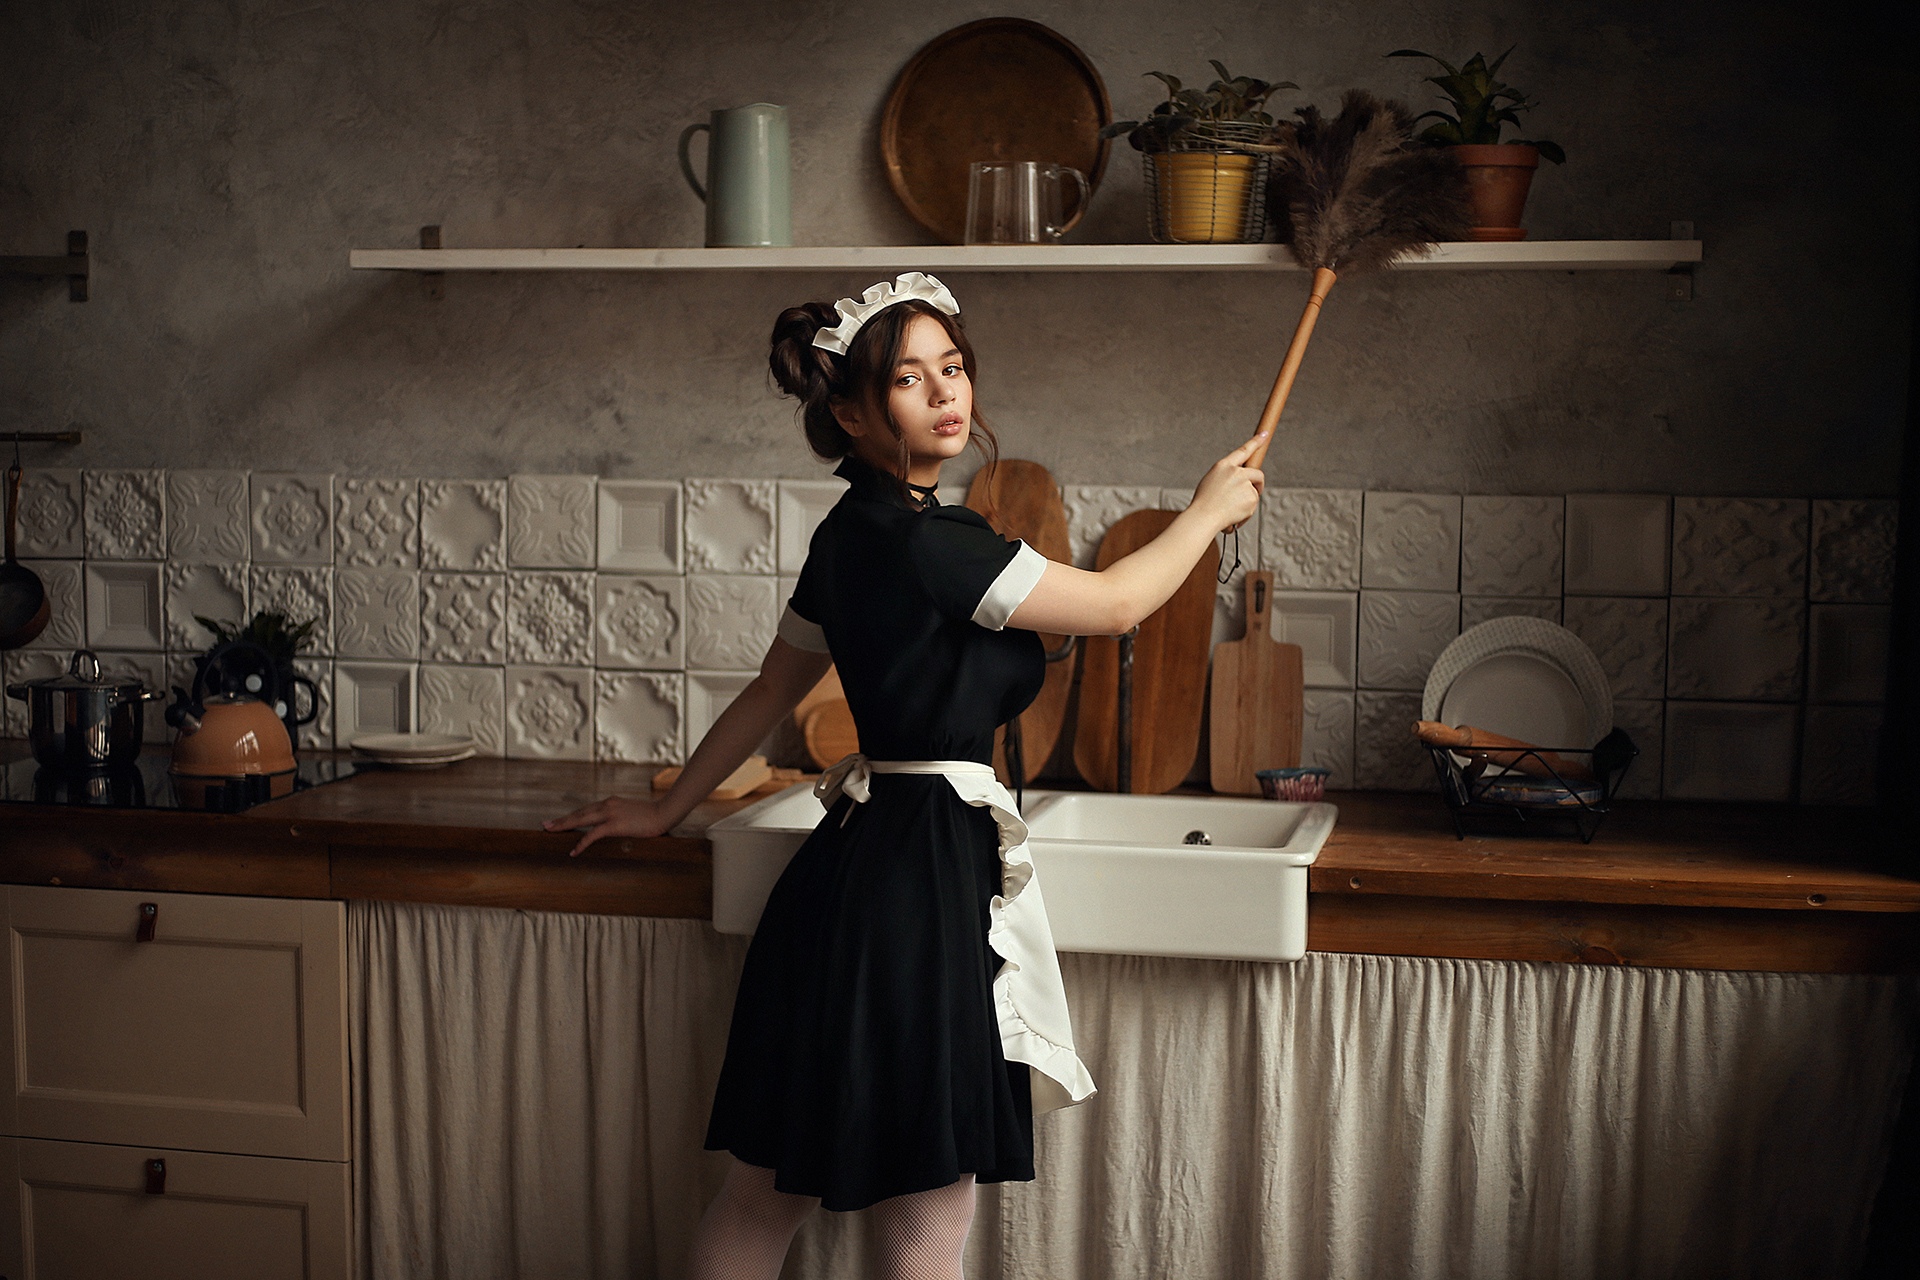 Simone stephens maid pic